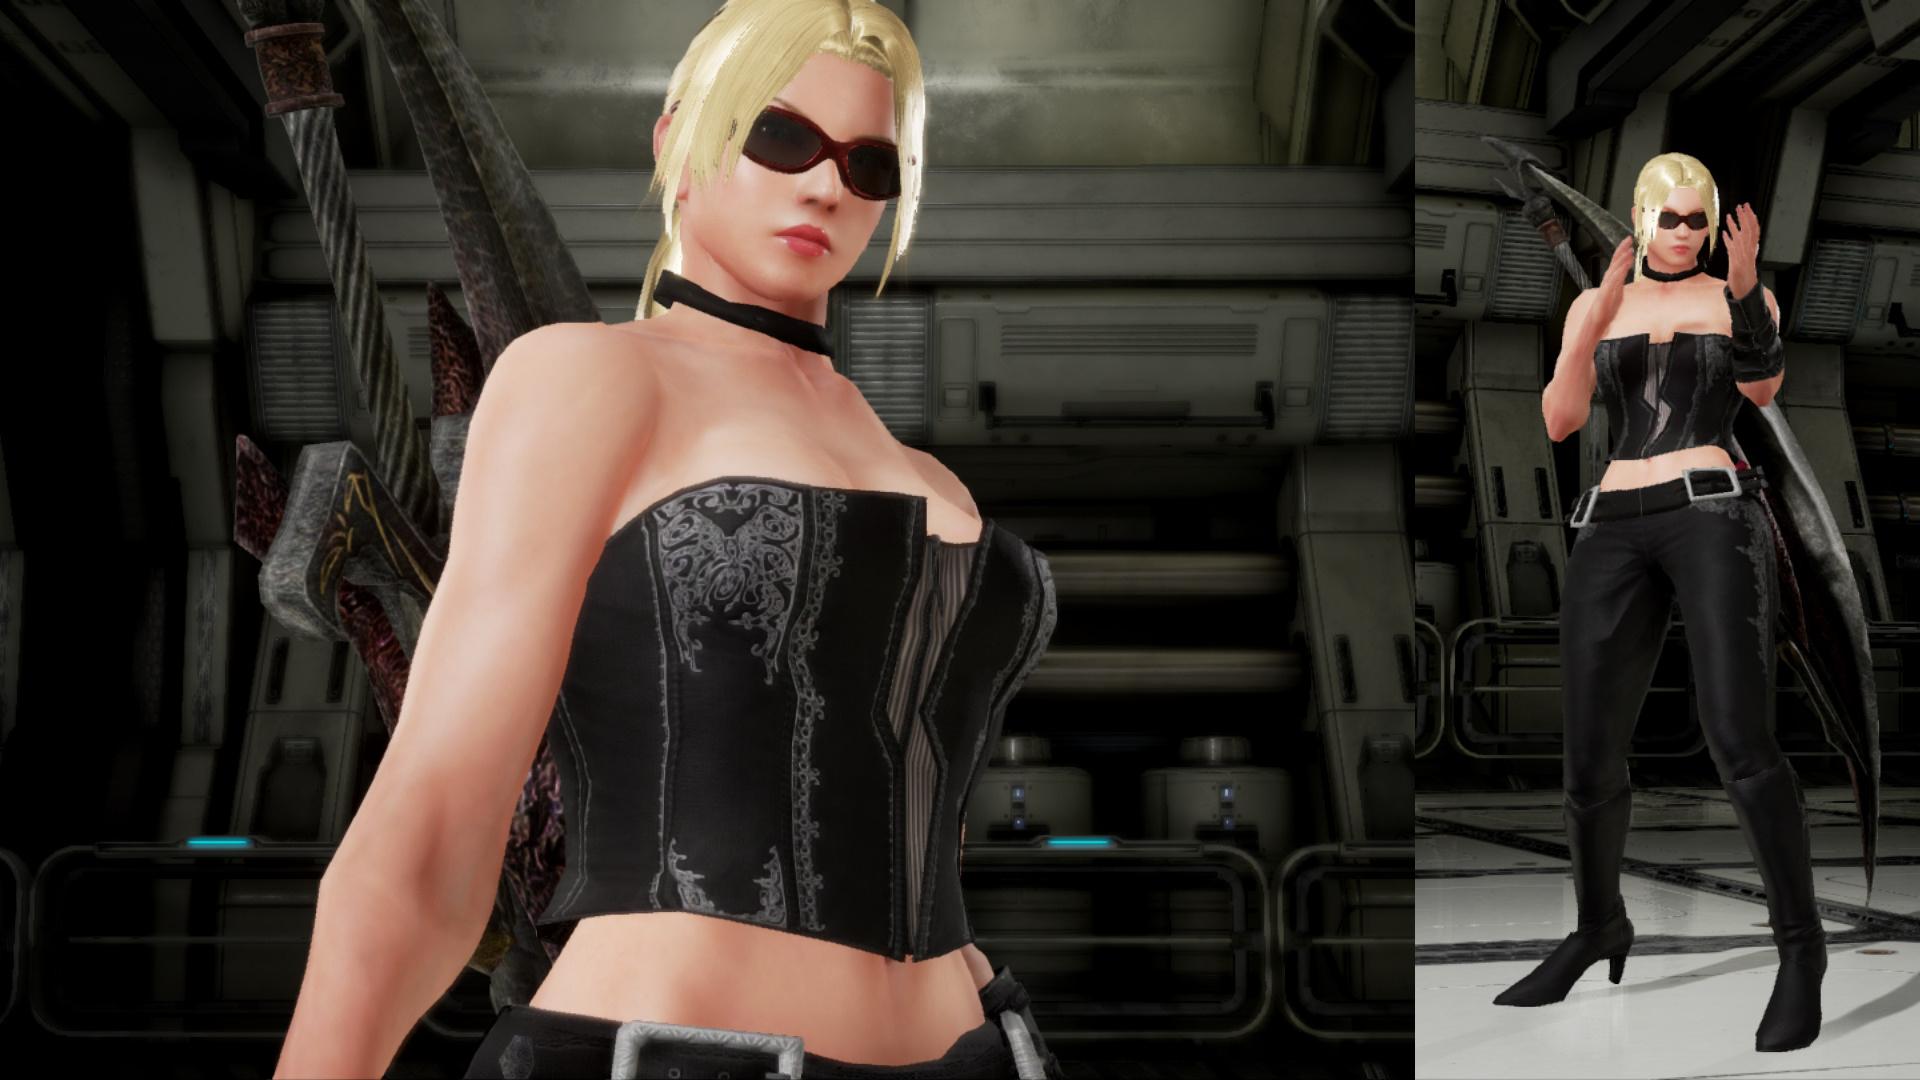 TekkenMods - DMC4 Trish outfit for Nina